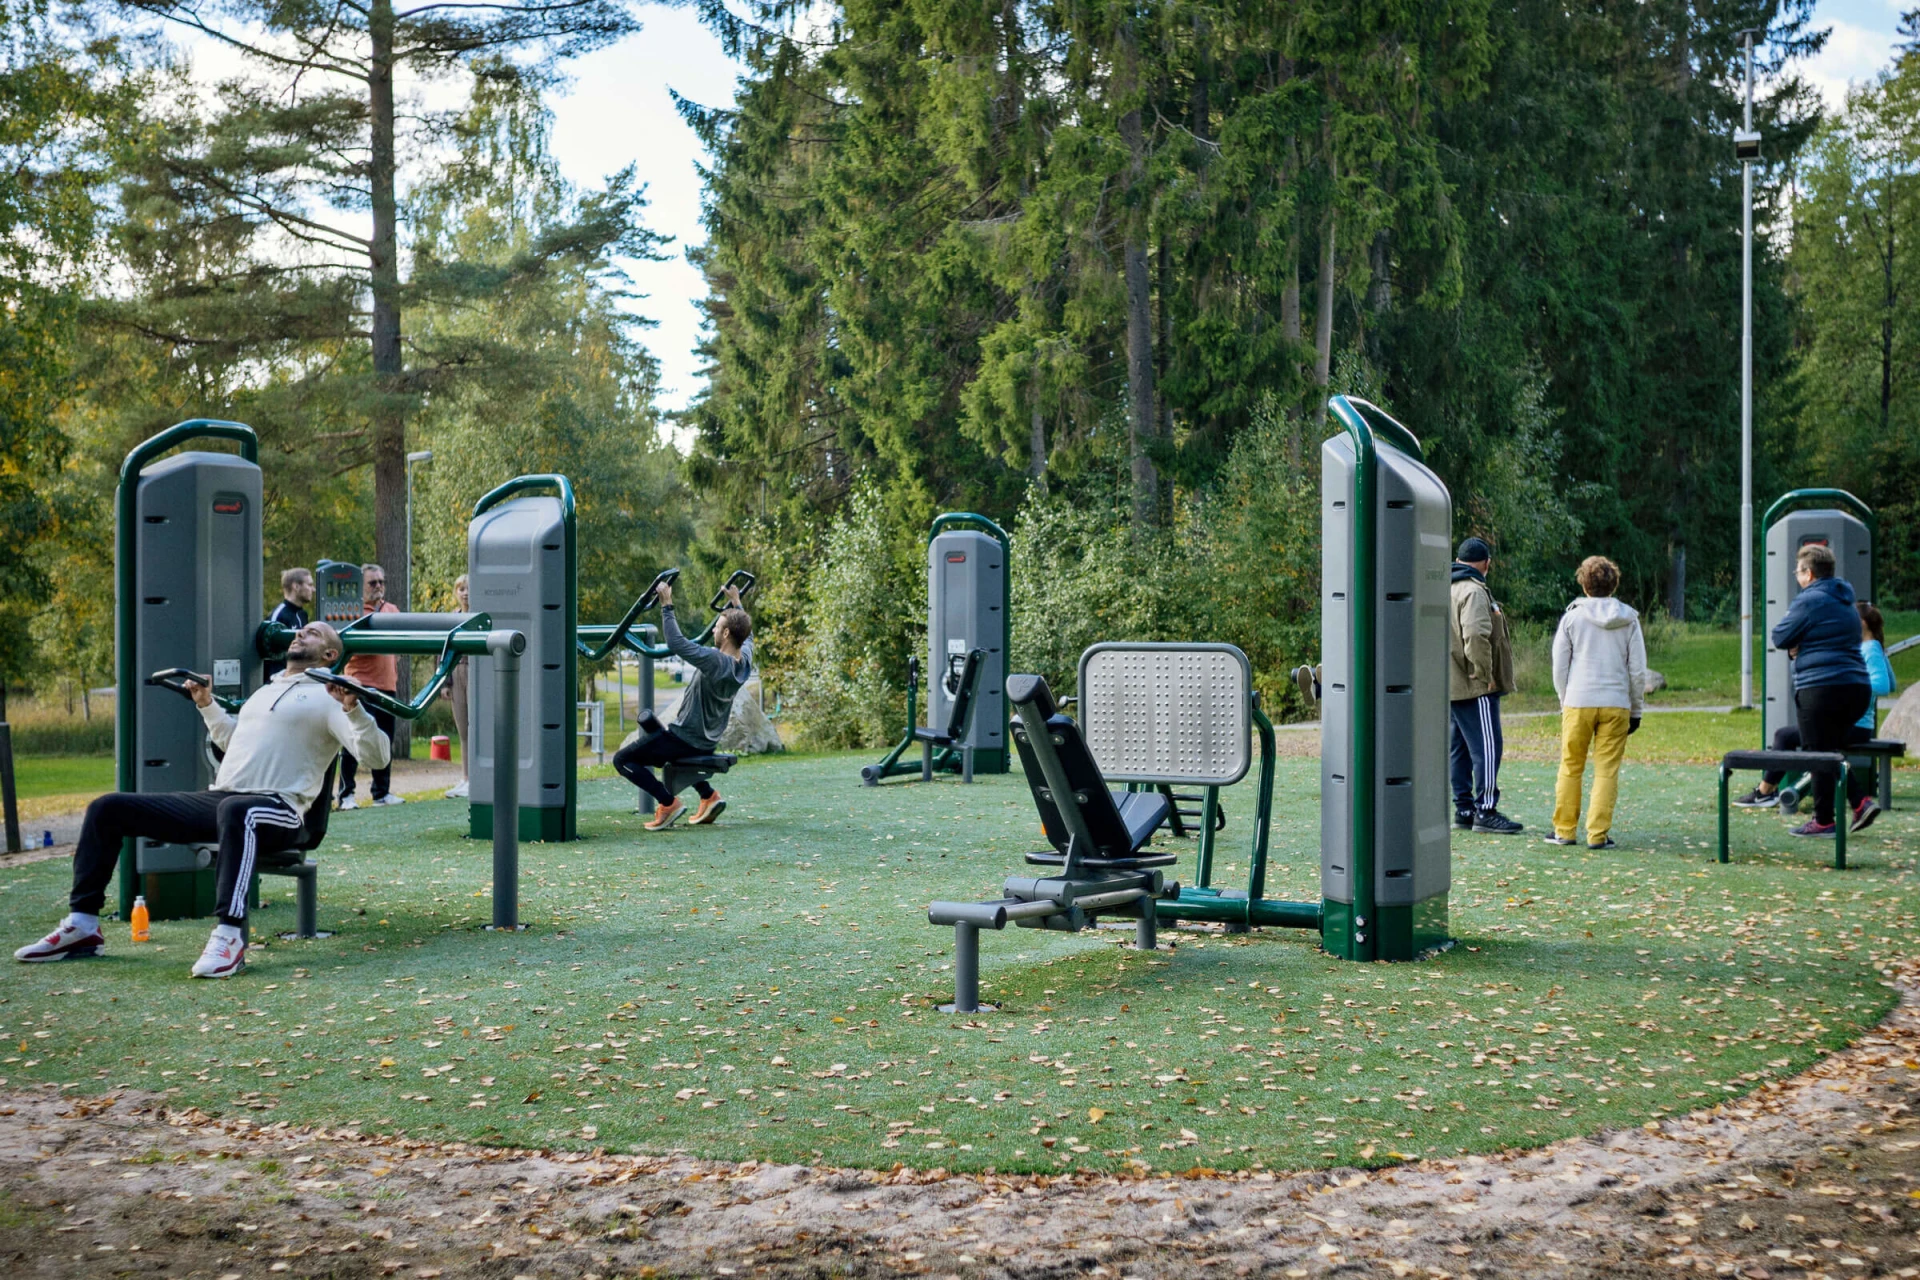 sportifs sur des équipements de musculation en plein air à Kypegården, Suède